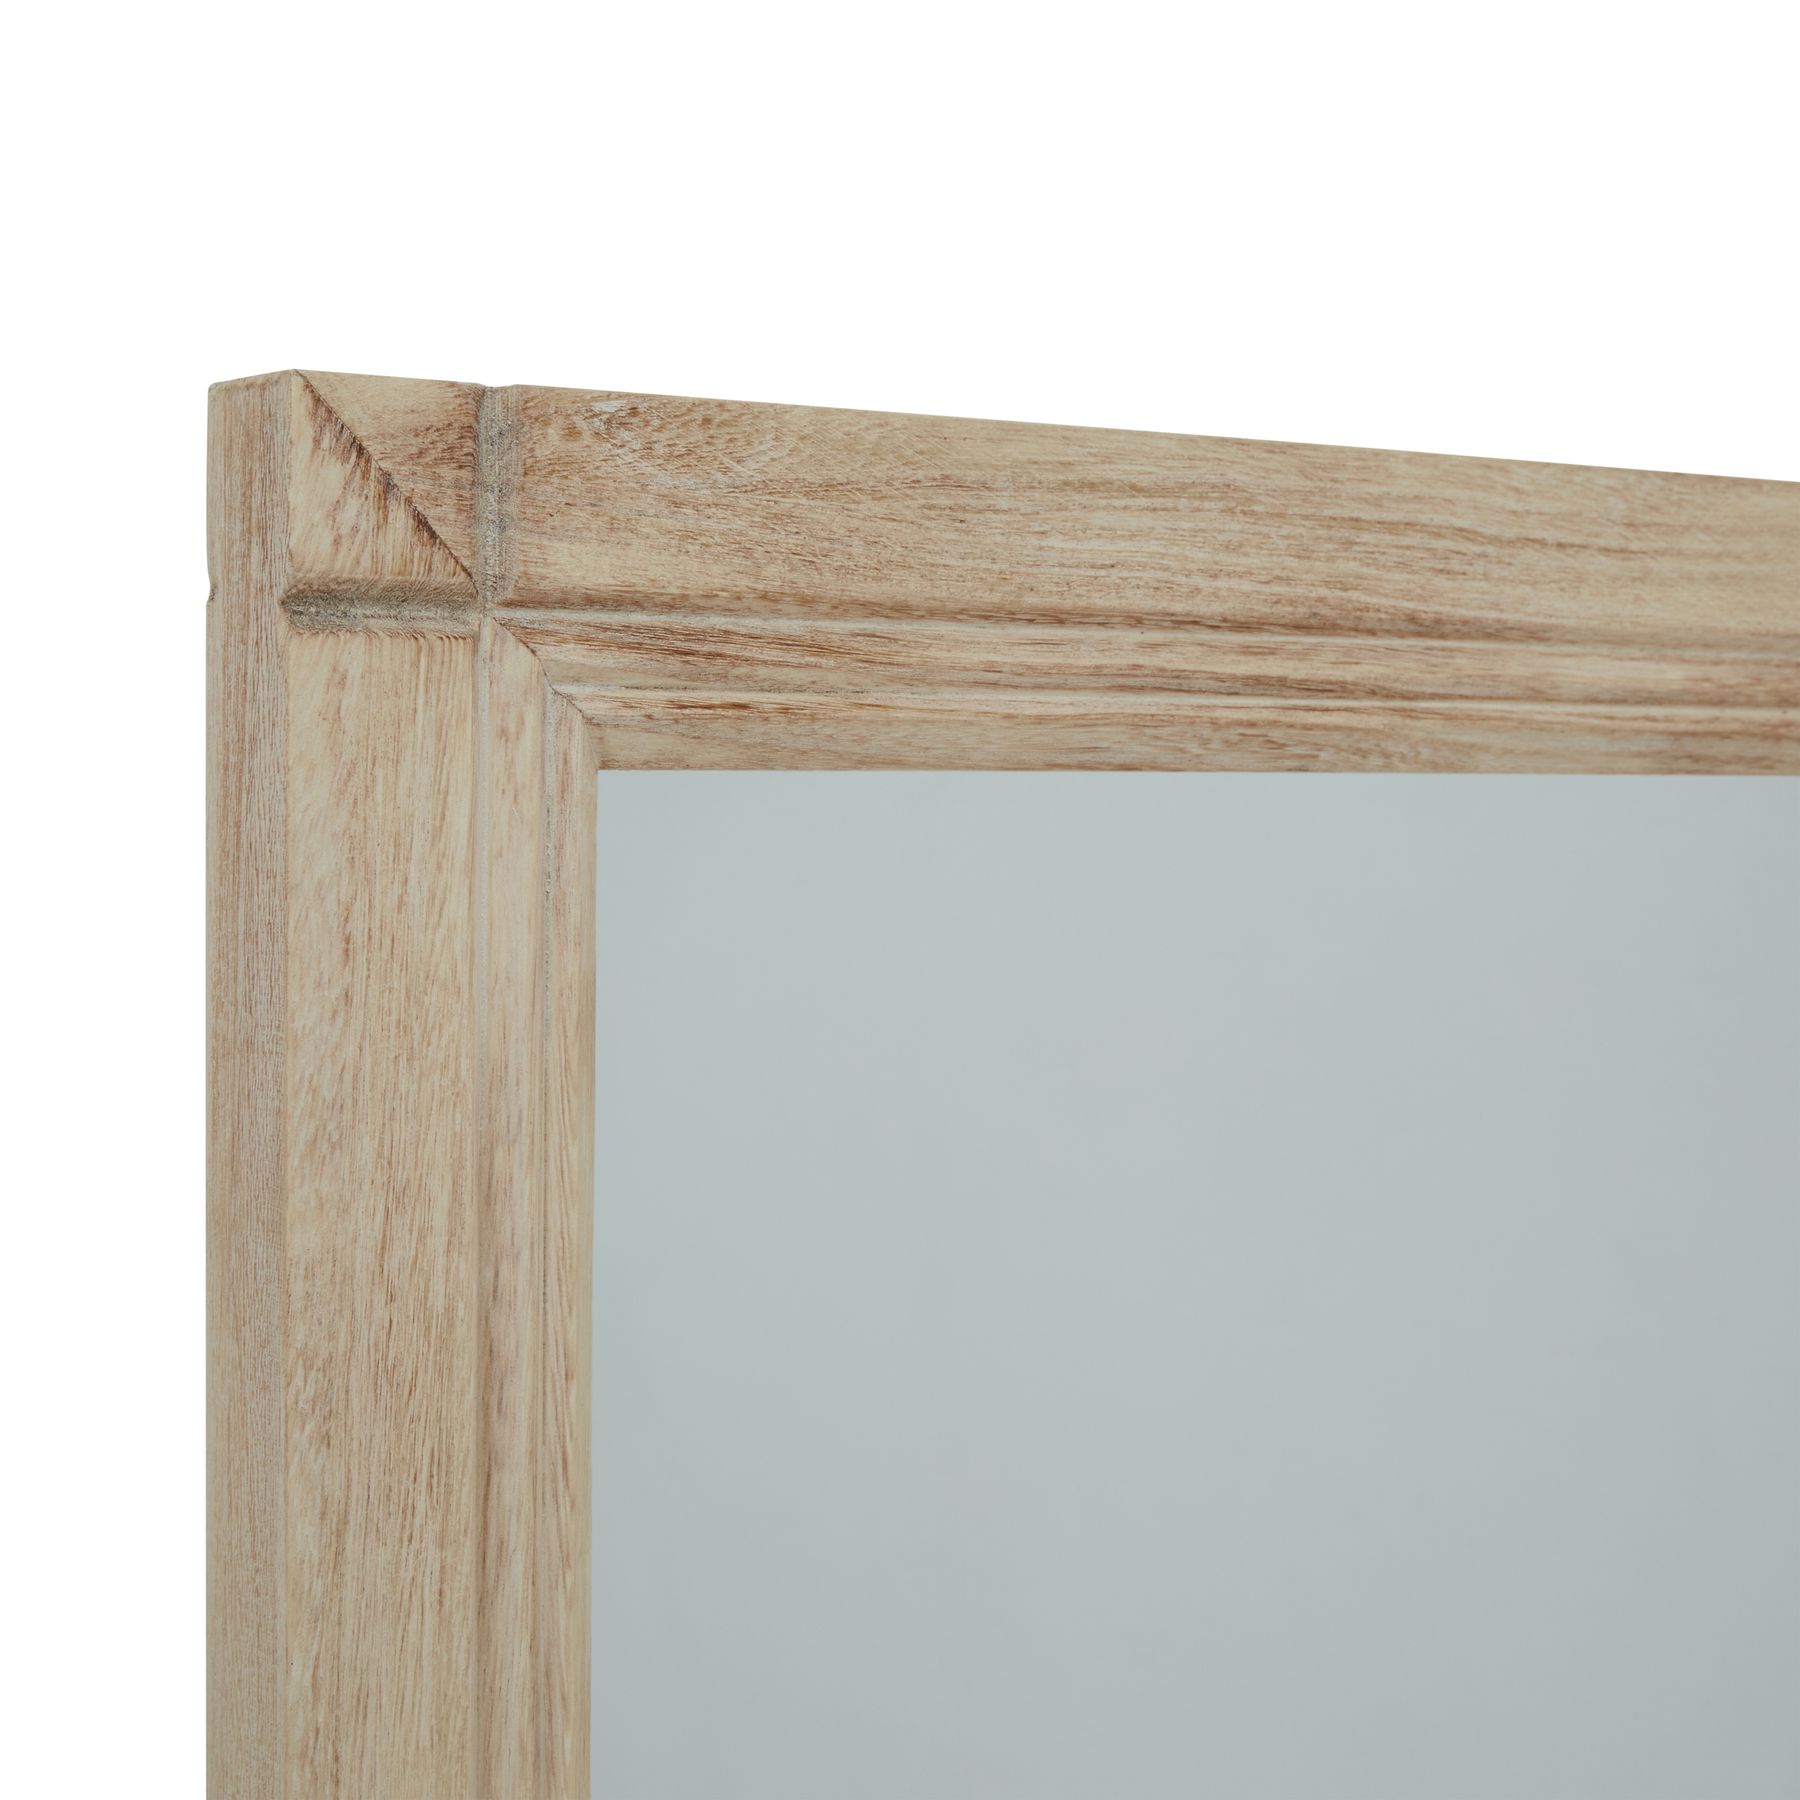 Washed Wood Large Window Mirror - Image 2